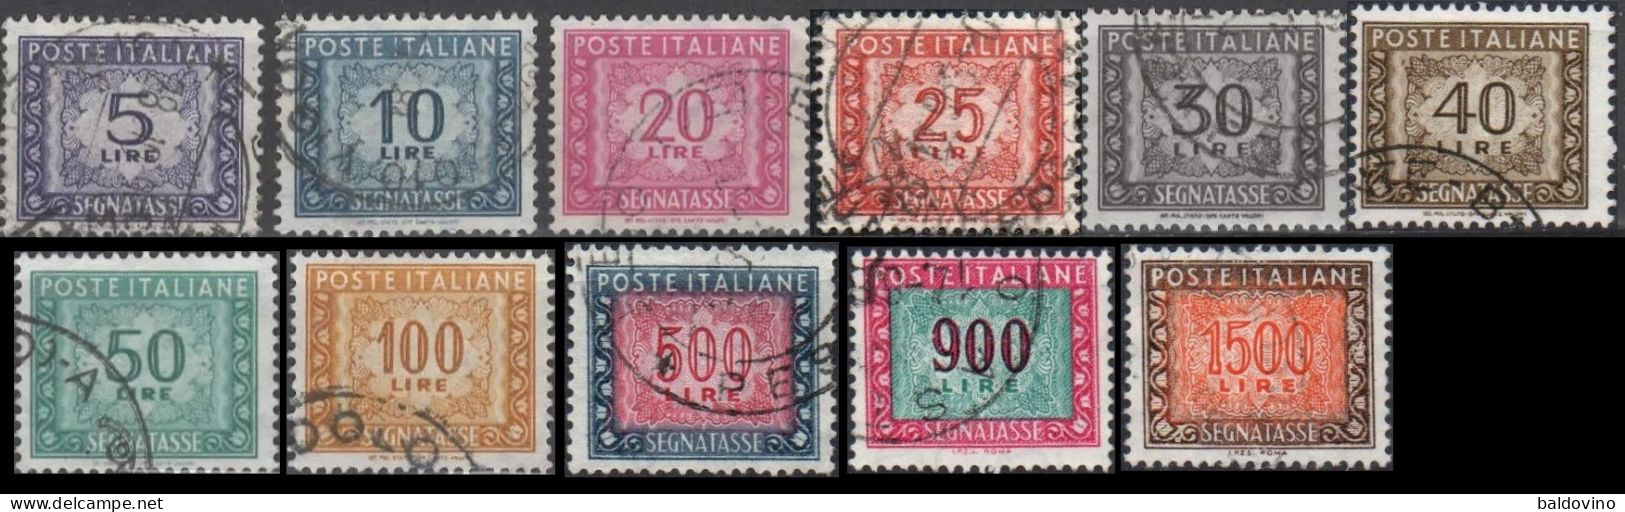 Italia 1955/1991 Segnatasse Fil. Stelle 11 Valori - Impuestos